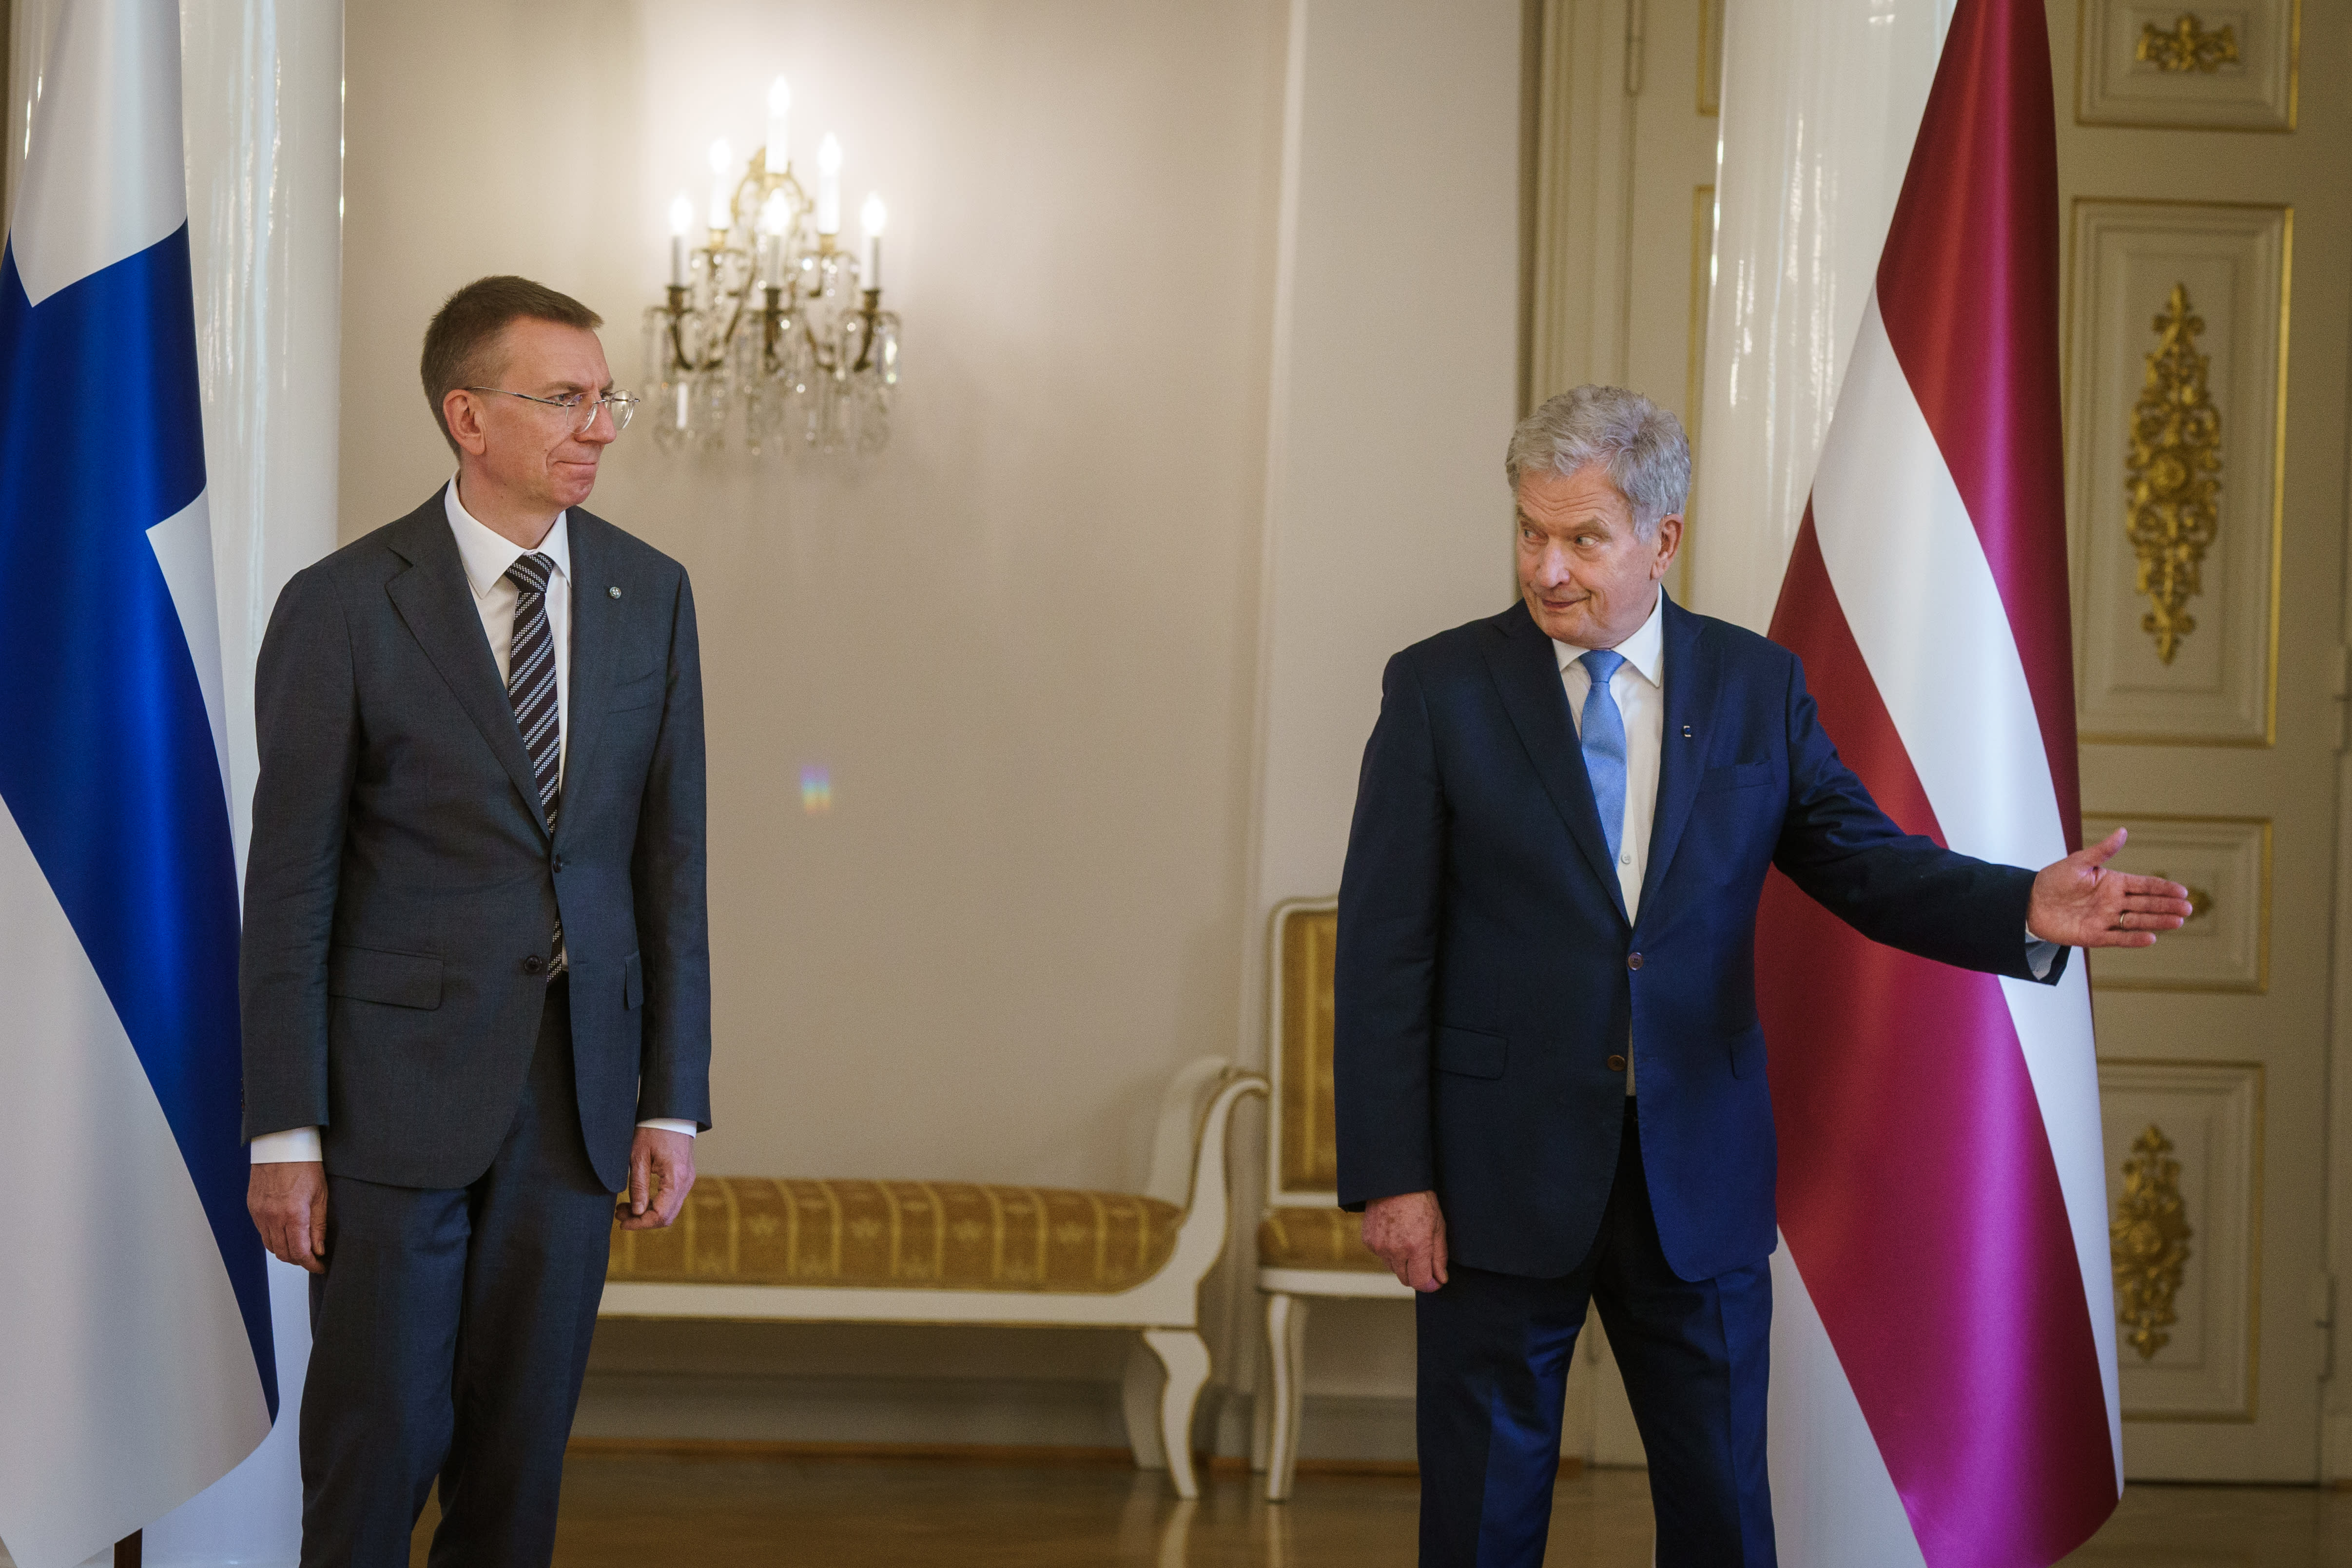 El presidente finlandés y el ministro de Asuntos Exteriores se reunirán con sus homólogos de Letonia y Francia